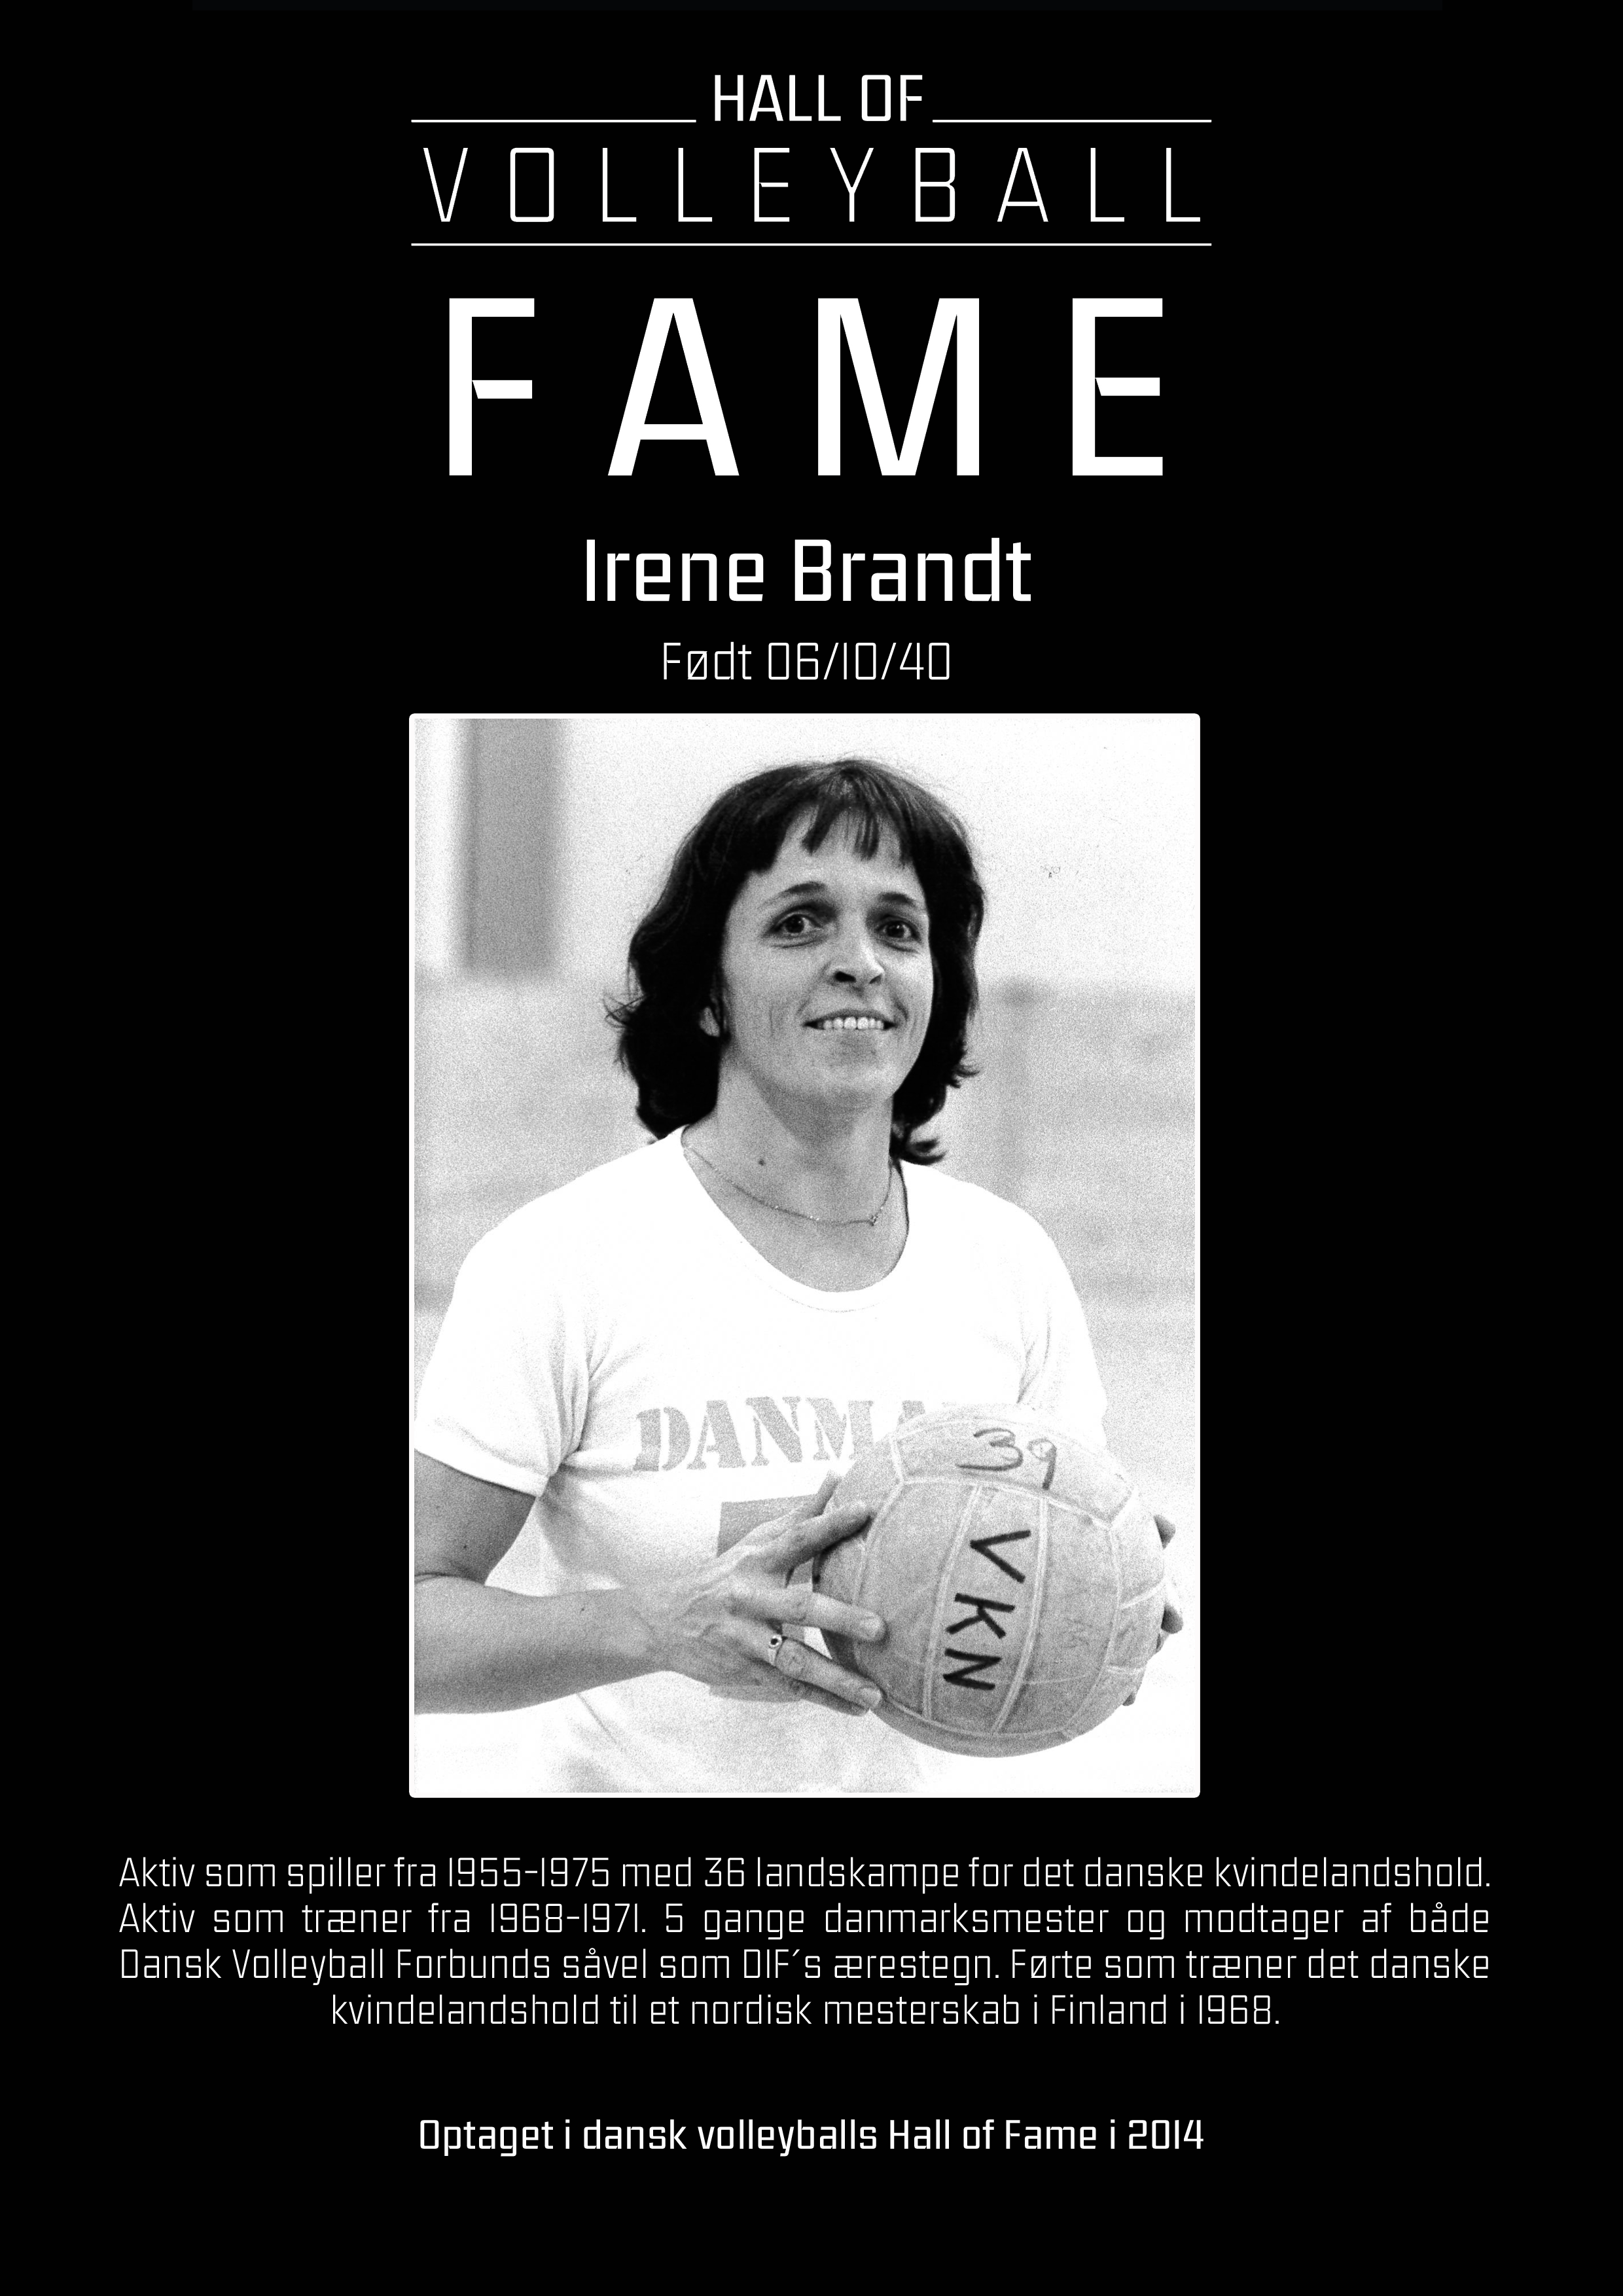 Irene Brandt